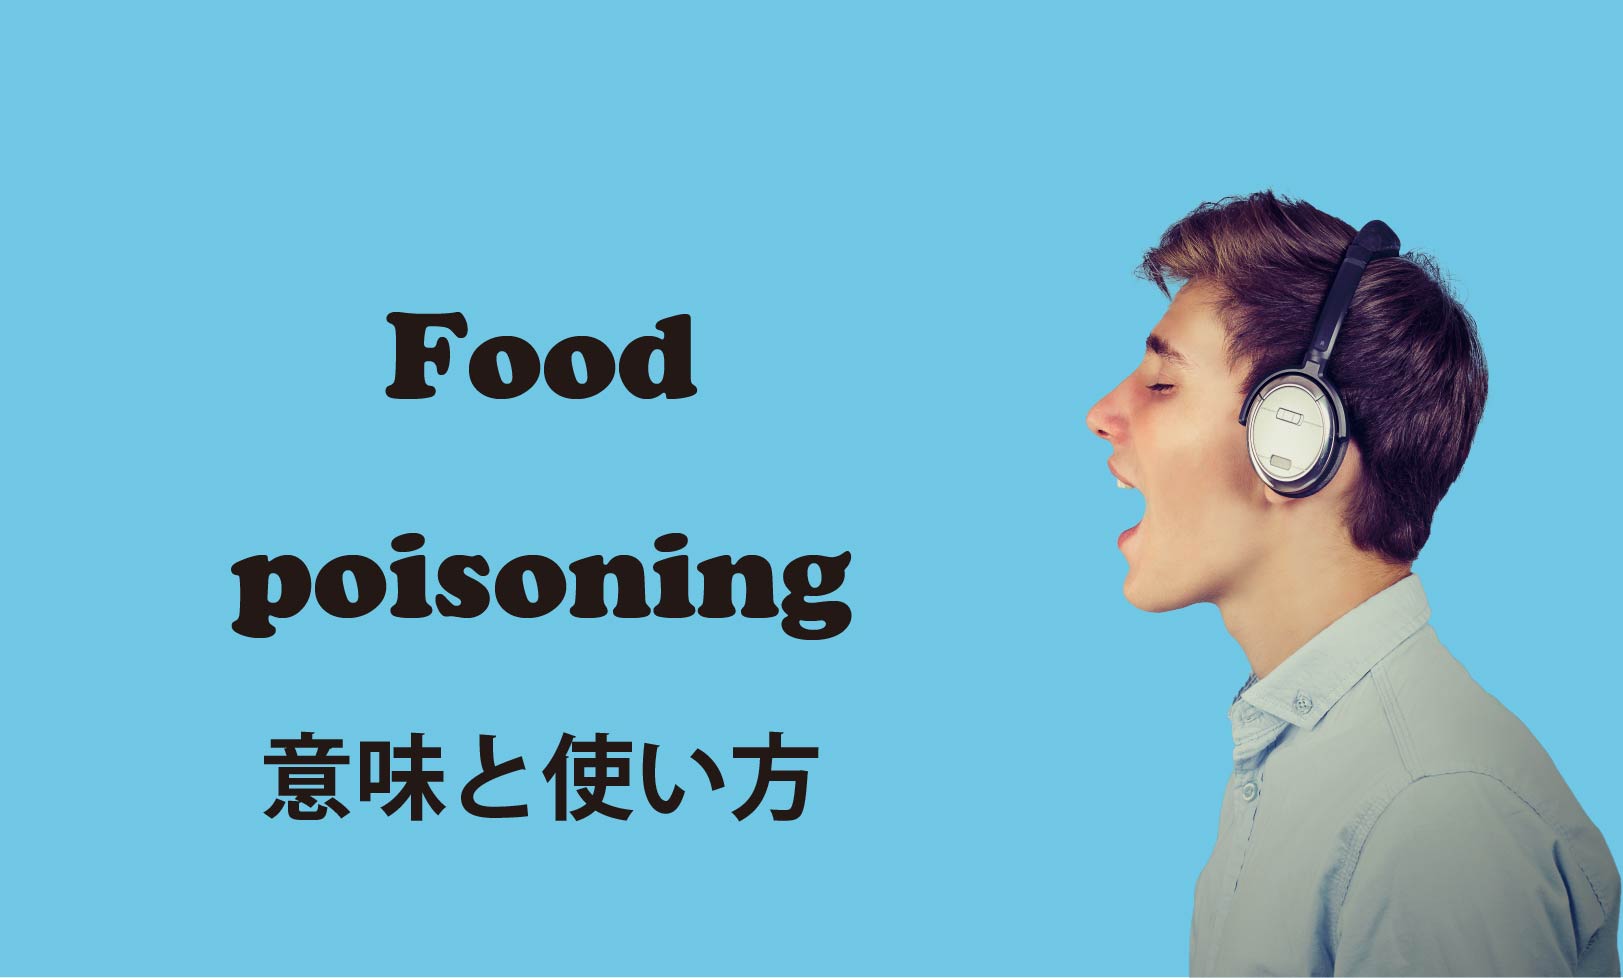 ネイティブが使う英会話 Food Poisoning 食中毒 の意味と使い方 東京駒沢の英会話 スペイン語教室 Borderless Communication